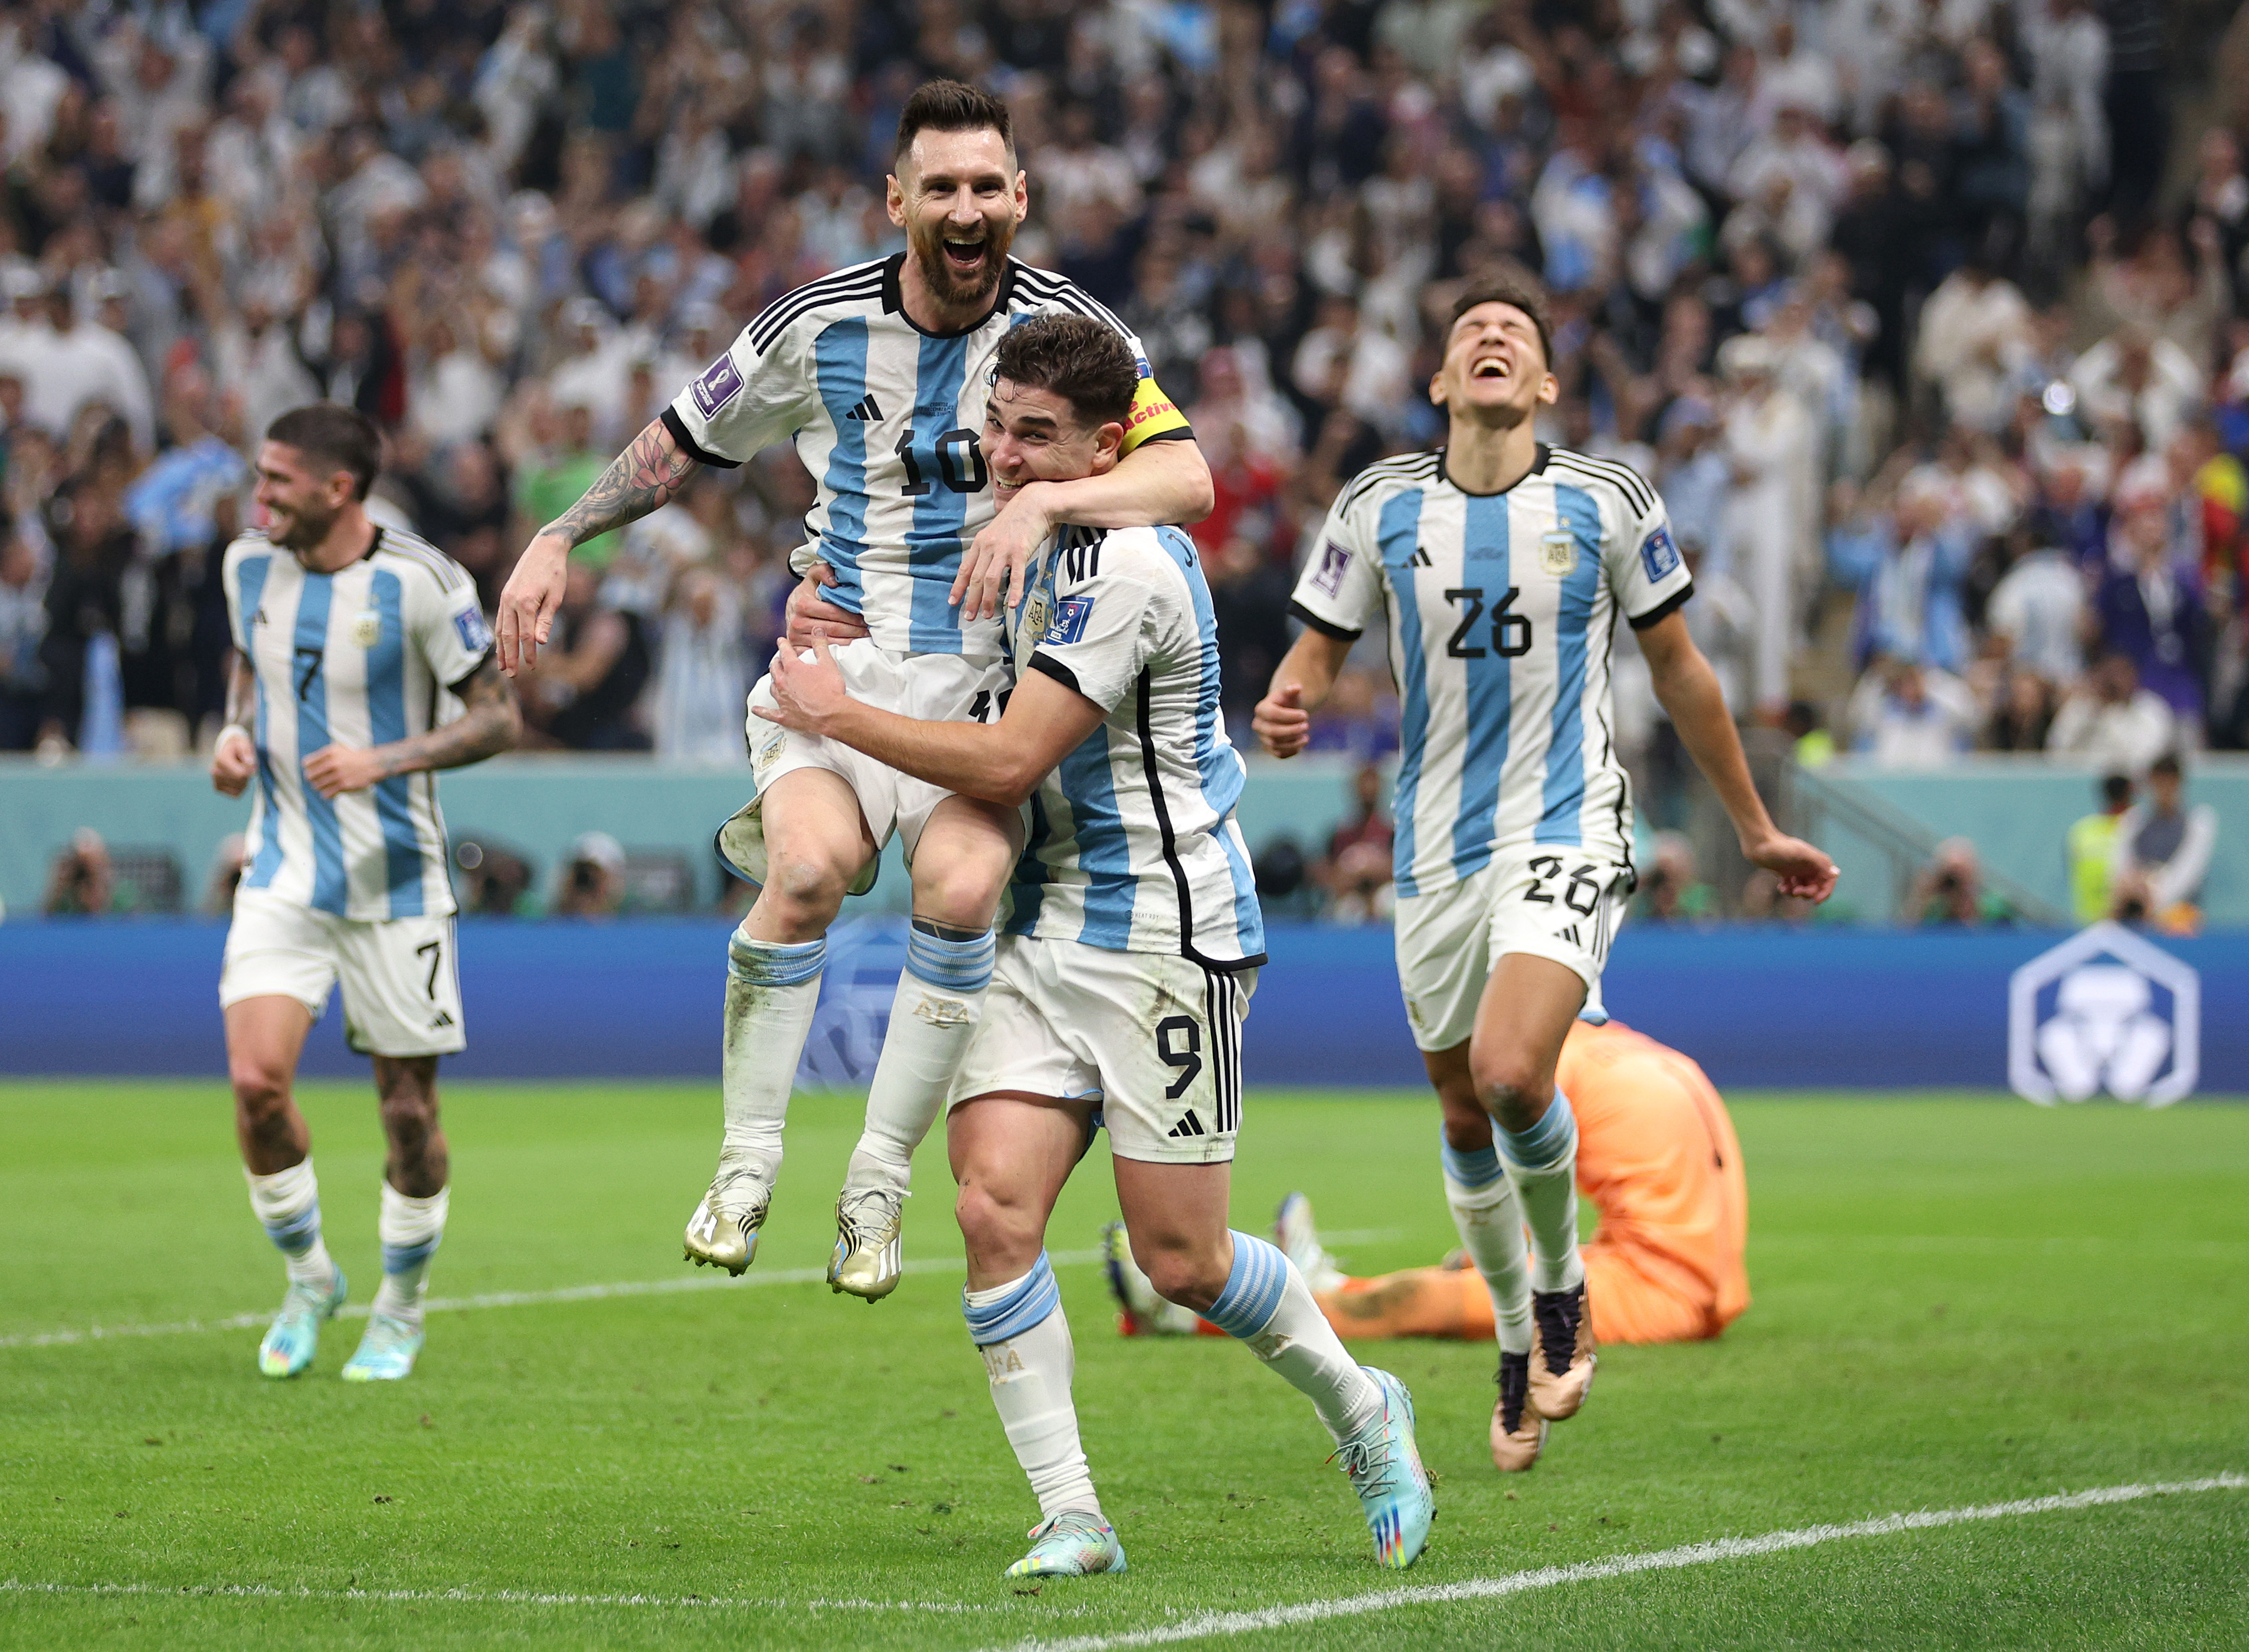 Argentina vincente mondiale quota snaikeyword: quota snaikey per l’Argentina di vincere il mondiale Sport